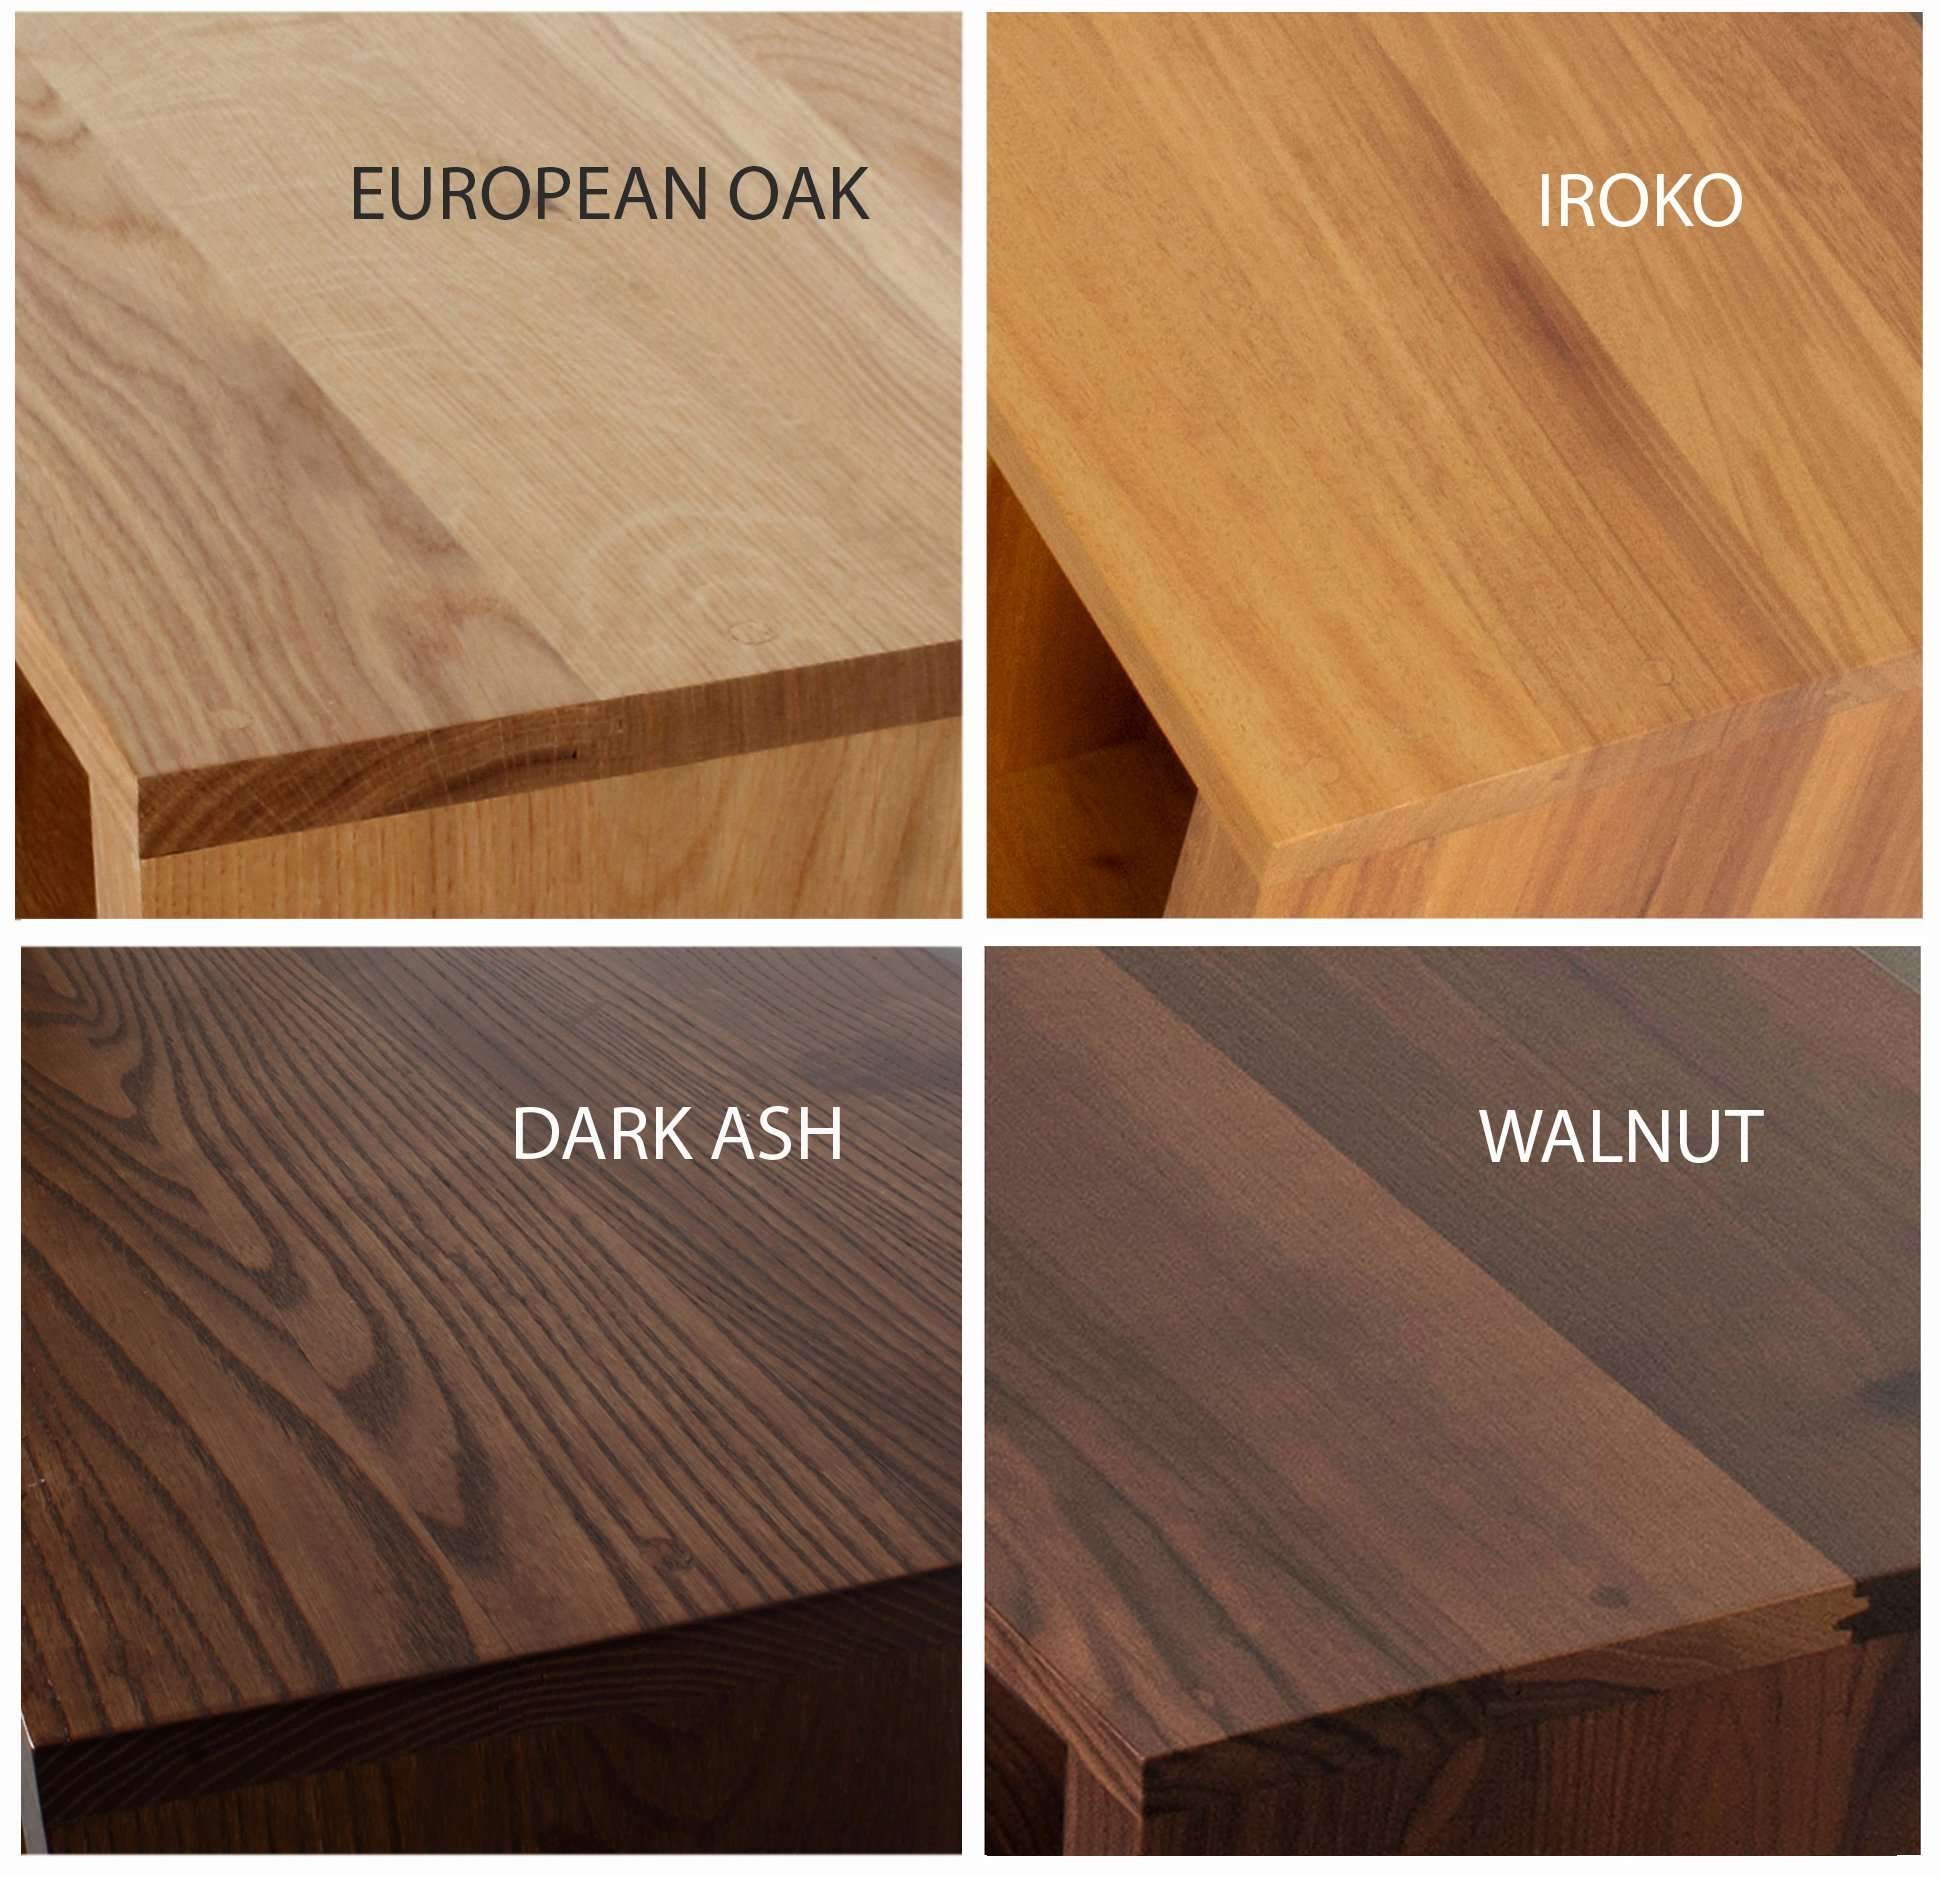 oak, ash, walnut and iroko wood